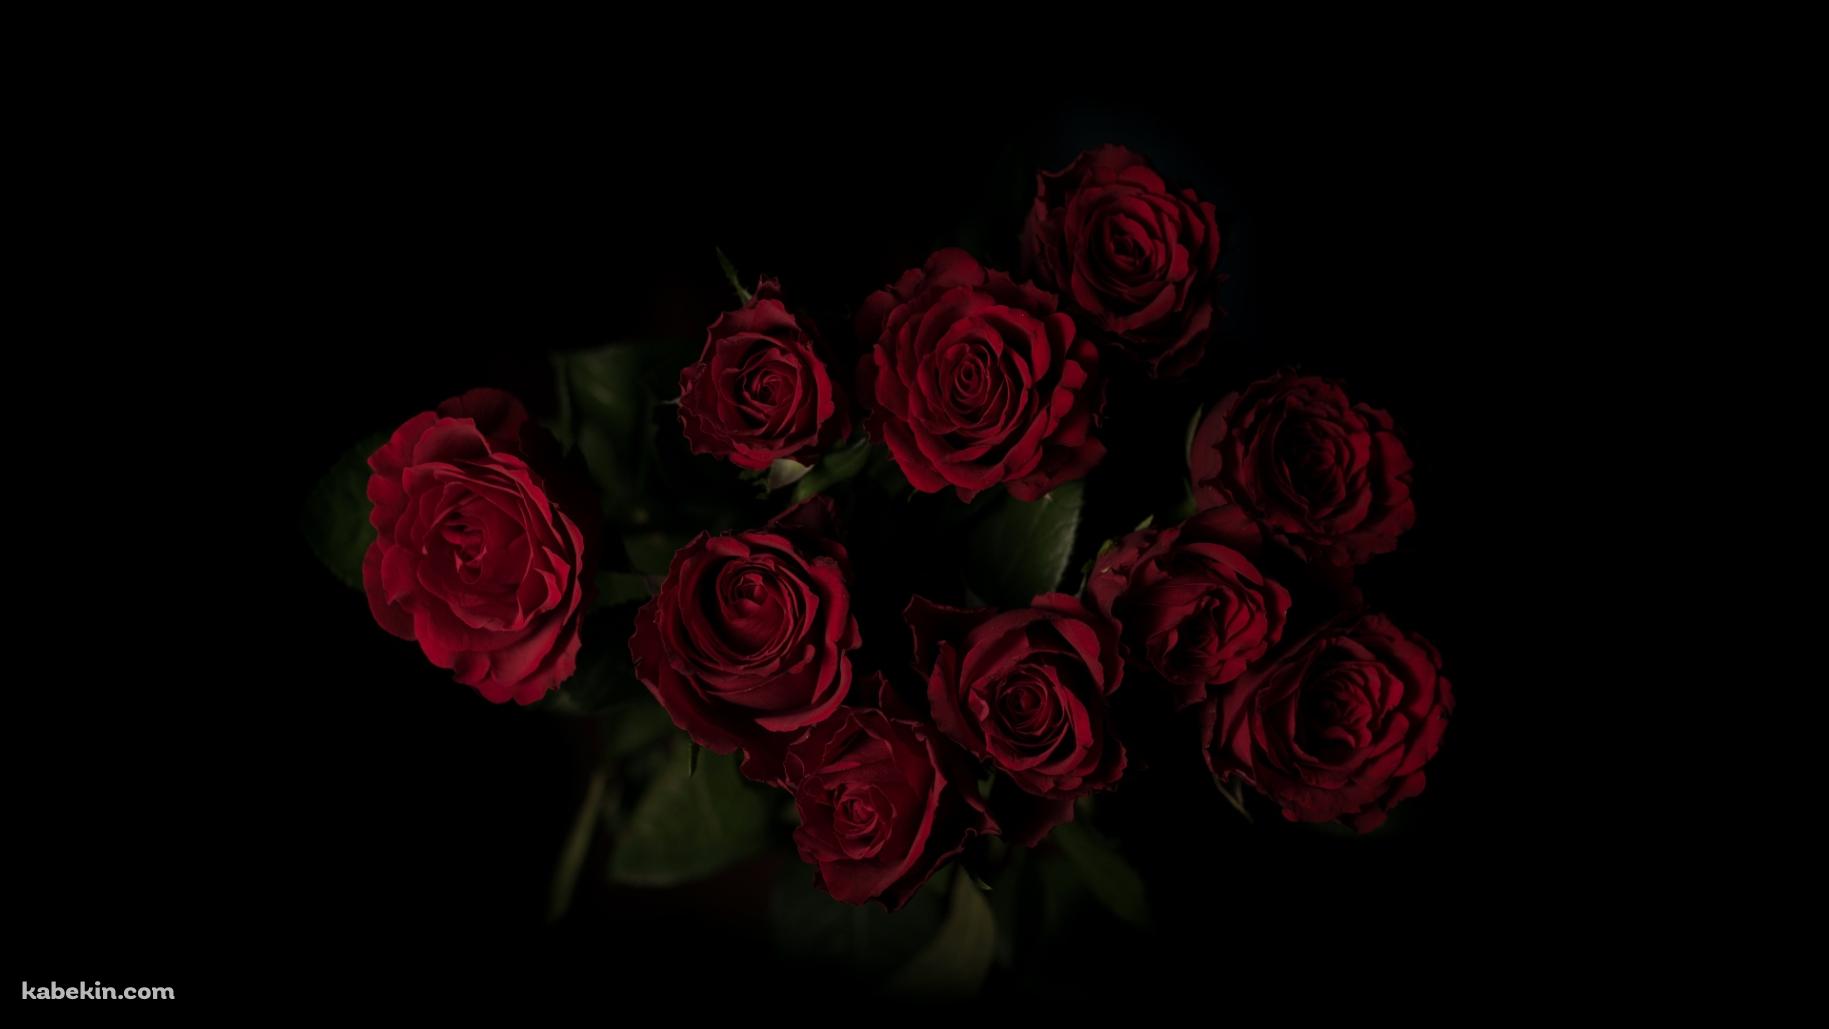 綺麗な赤い薔薇 花束の壁紙(1829px x 1029px) 高画質 PC・デスクトップ用